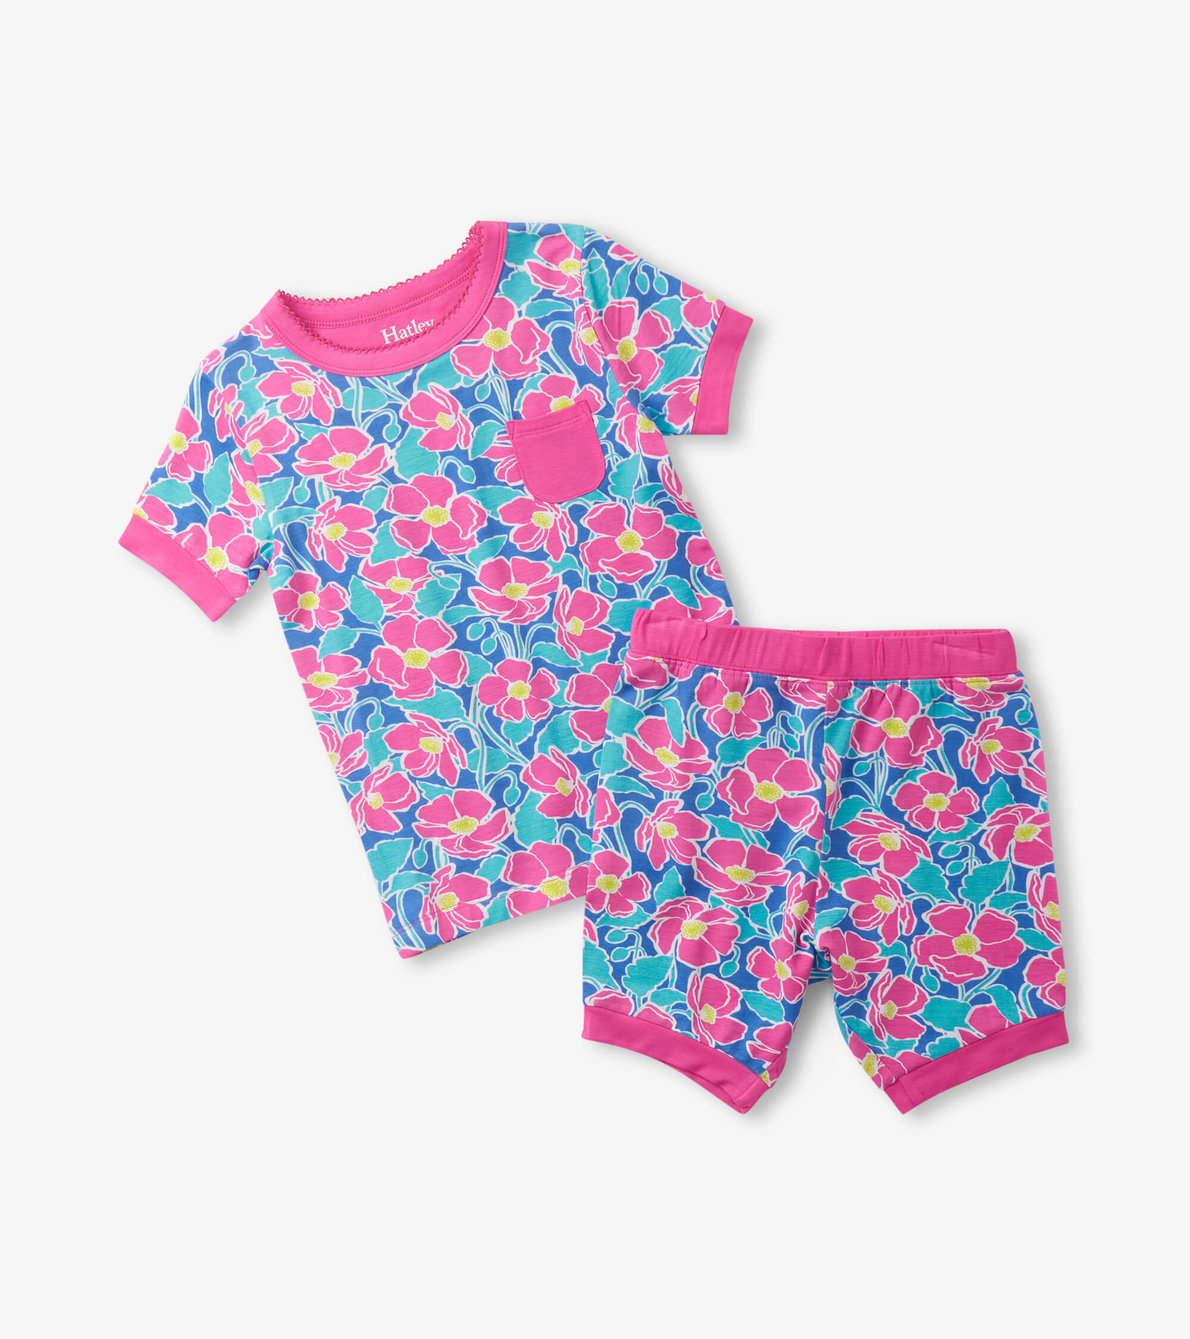 View larger image of Girls Big Poppies Bamboo Short Pajama Set